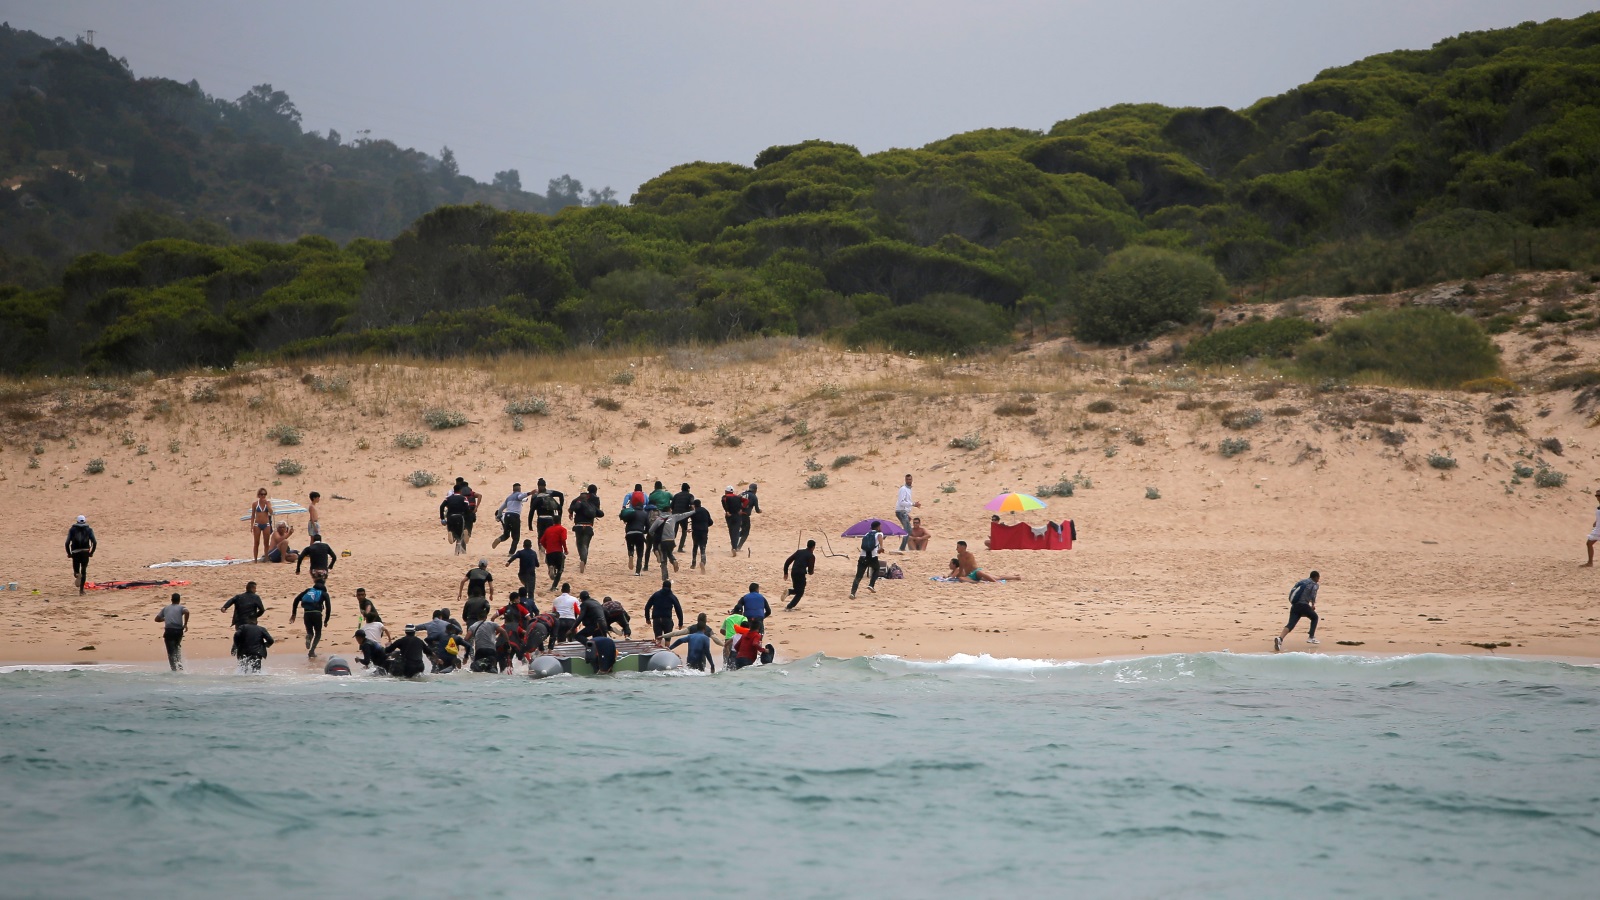 ‪مهاجرون غير نظاميين يصلون إلى سواحل إسبانيا على متن قارب مطاطي‬ مهاجرون غير نظاميين يصلون إلى سواحل إسبانيا على متن قارب مطاطي (رويترز-أرشيف)